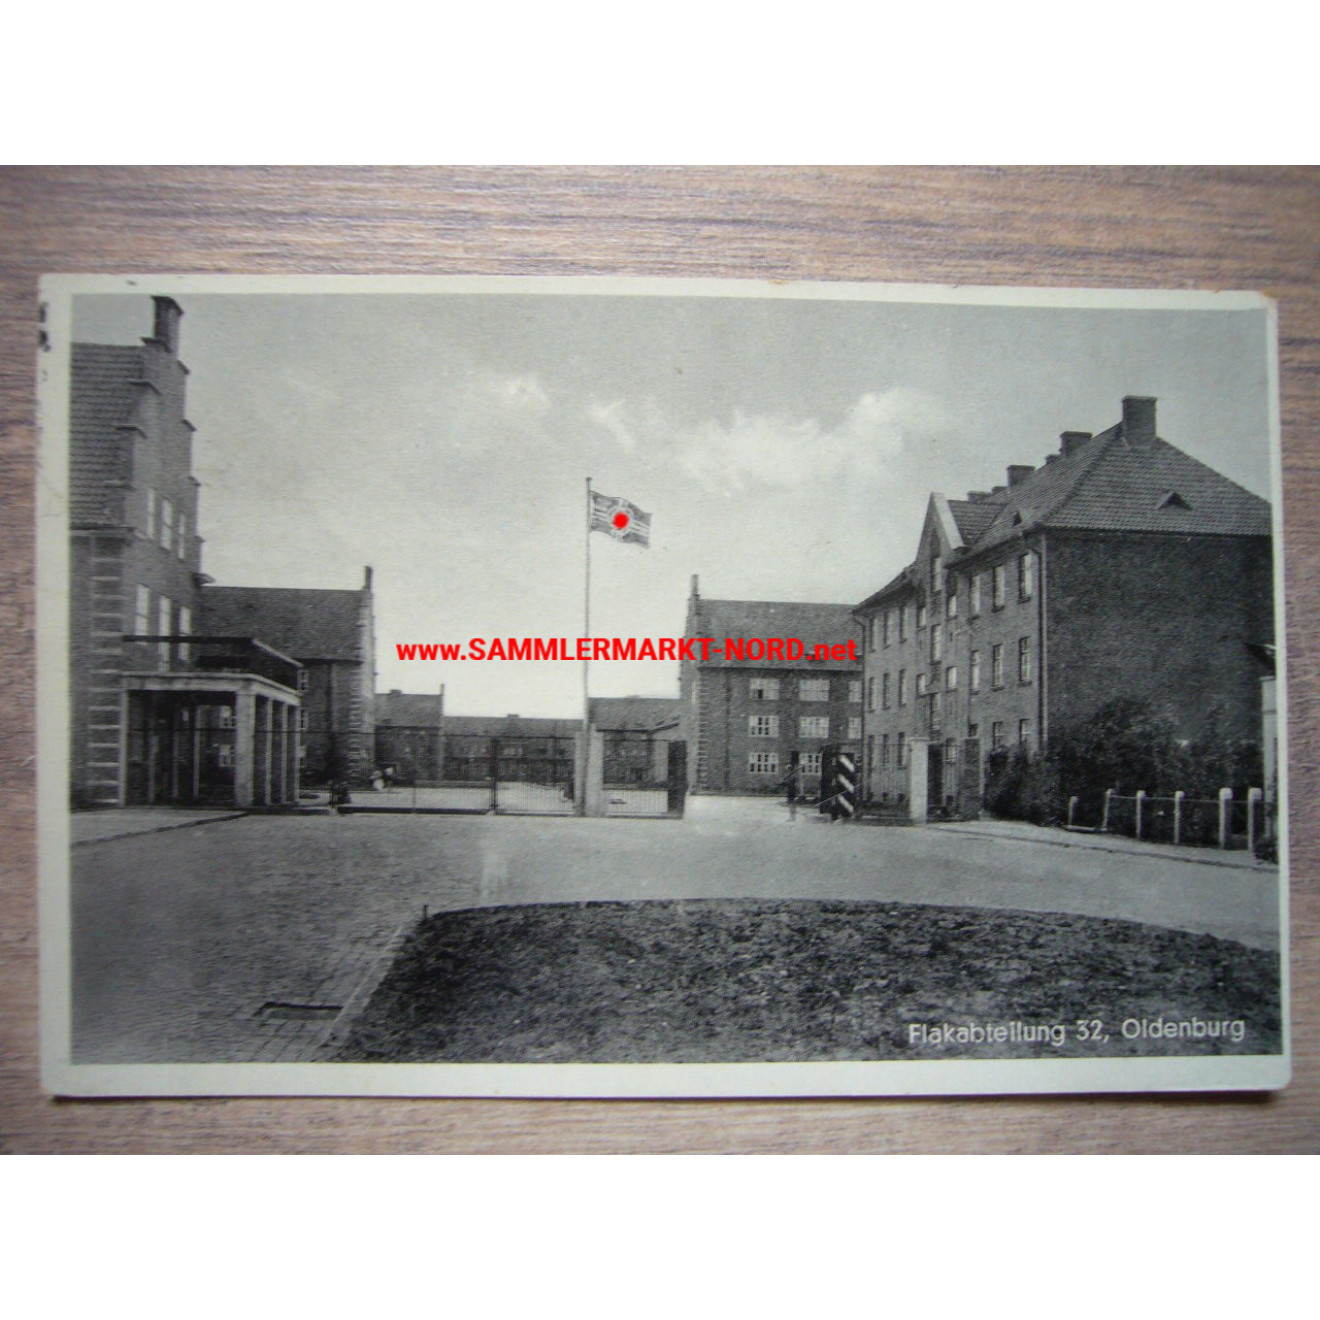 Luftwaffe - Flak Abteilung 32, Oldenburg - Barracks - Postcard